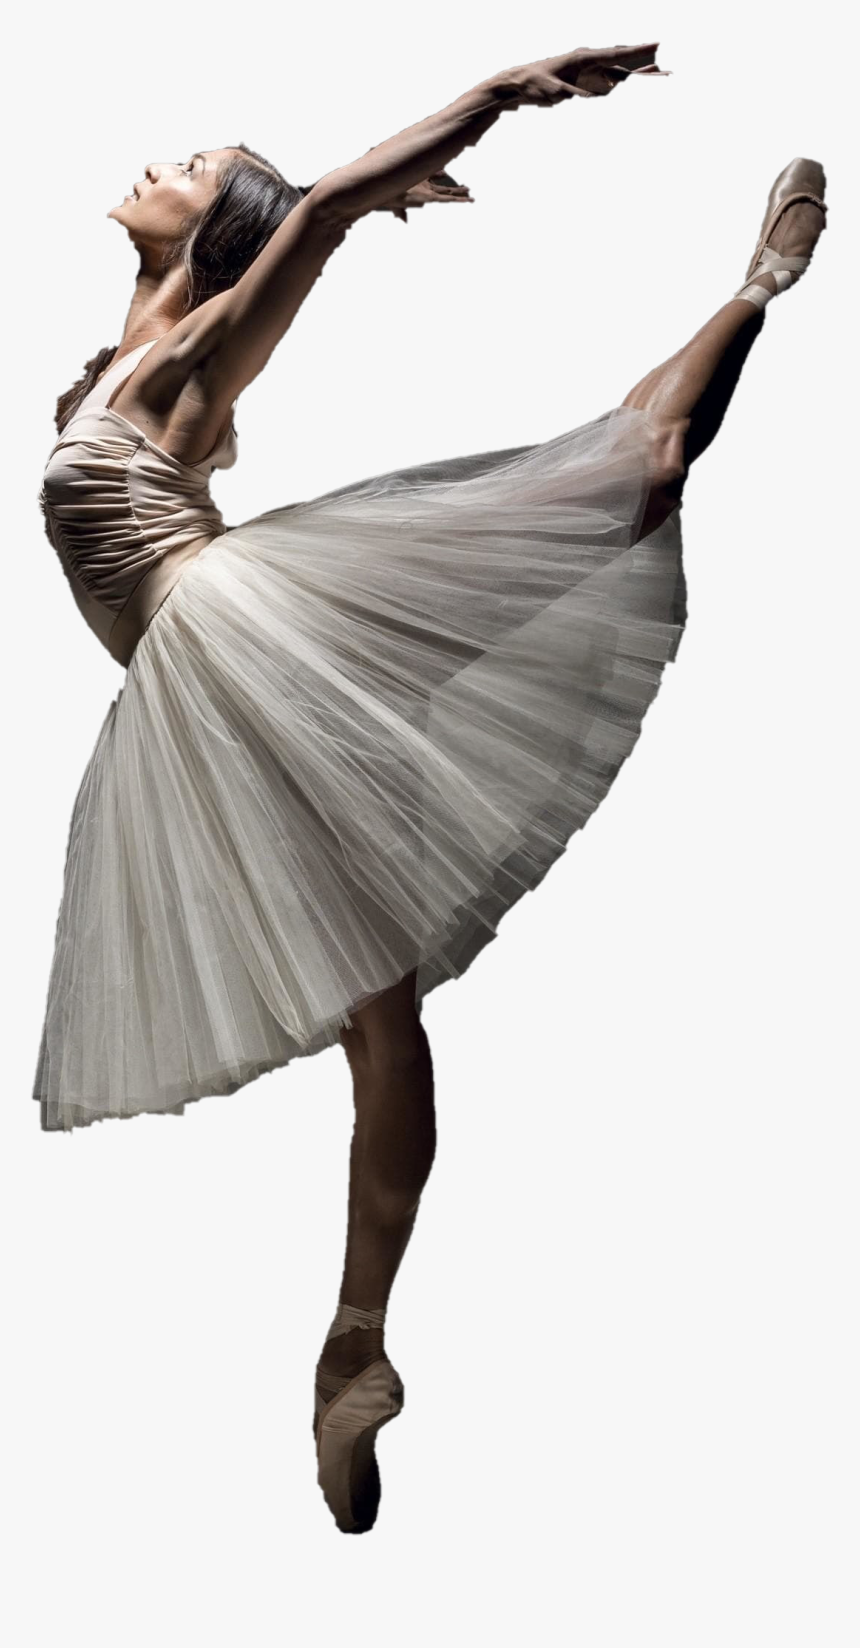 Ballet Png Download Image - Ballet Png, Transparent Png, Free Download